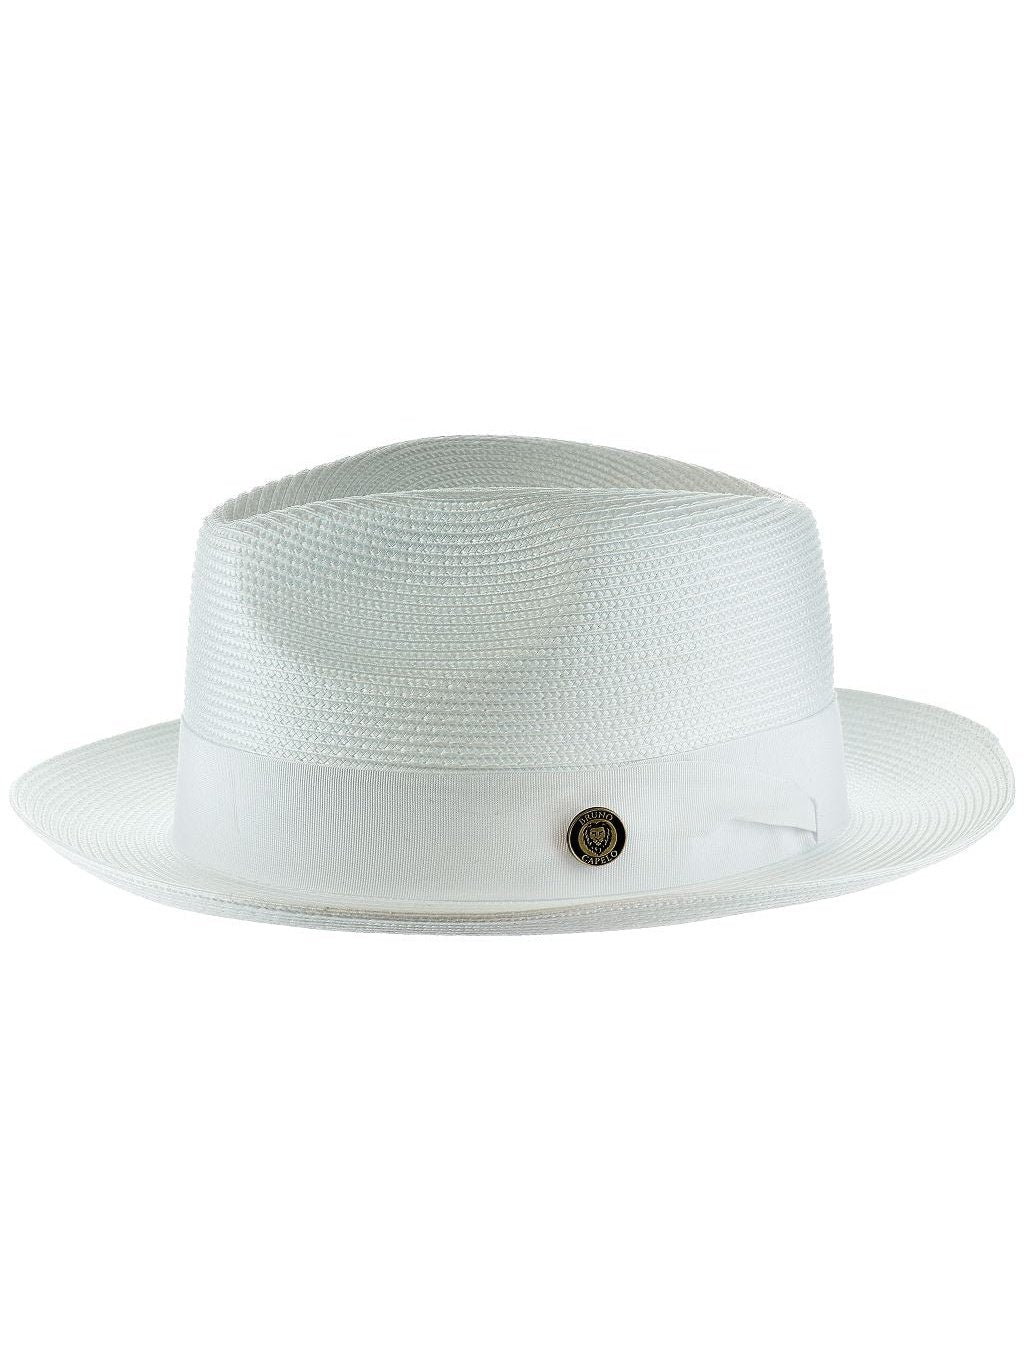 Mens The Francesco White Straw Hat